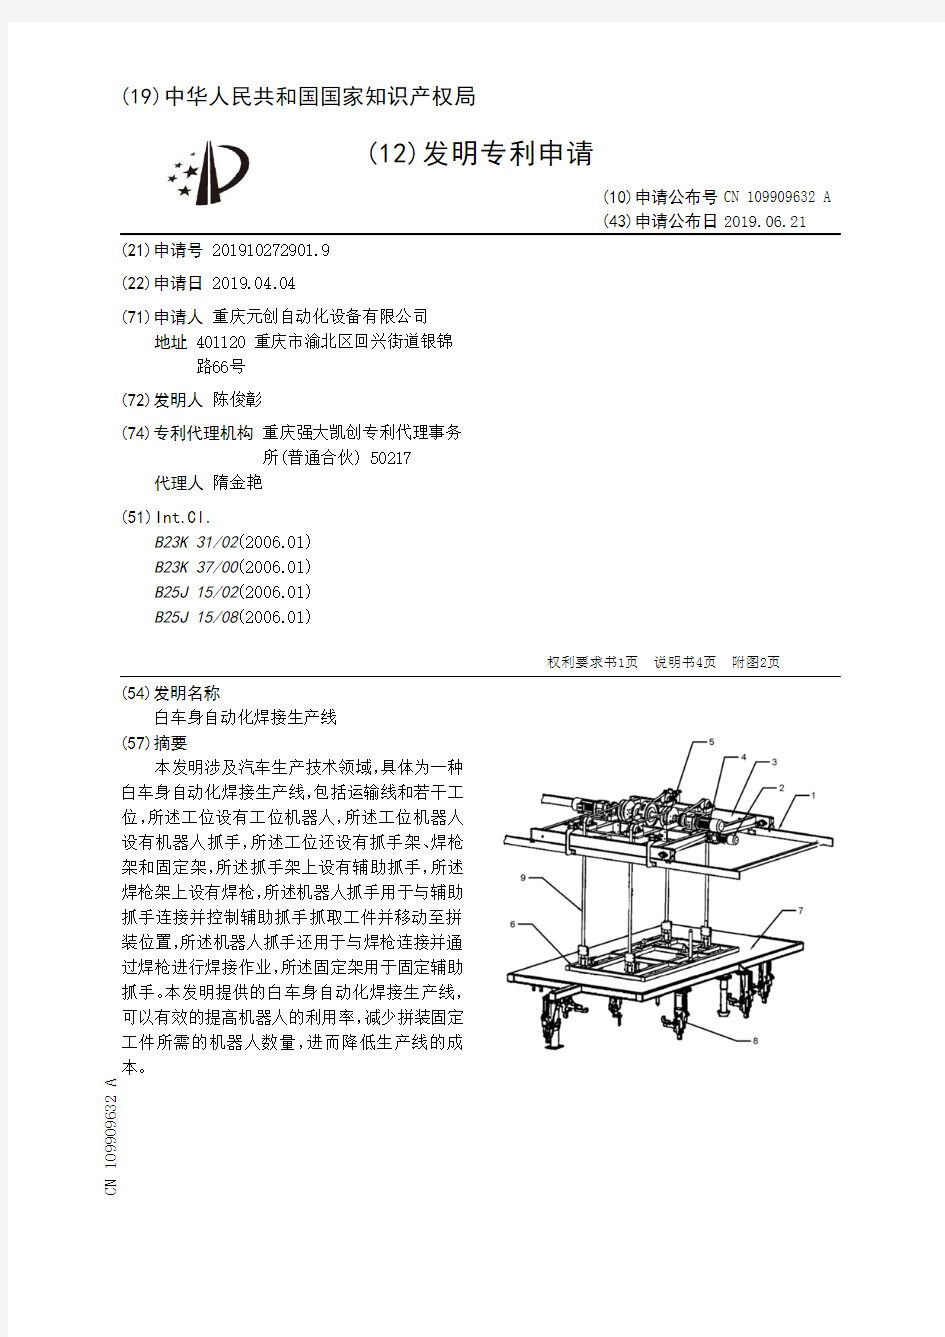 【CN109909632A】白车身自动化焊接生产线【专利】